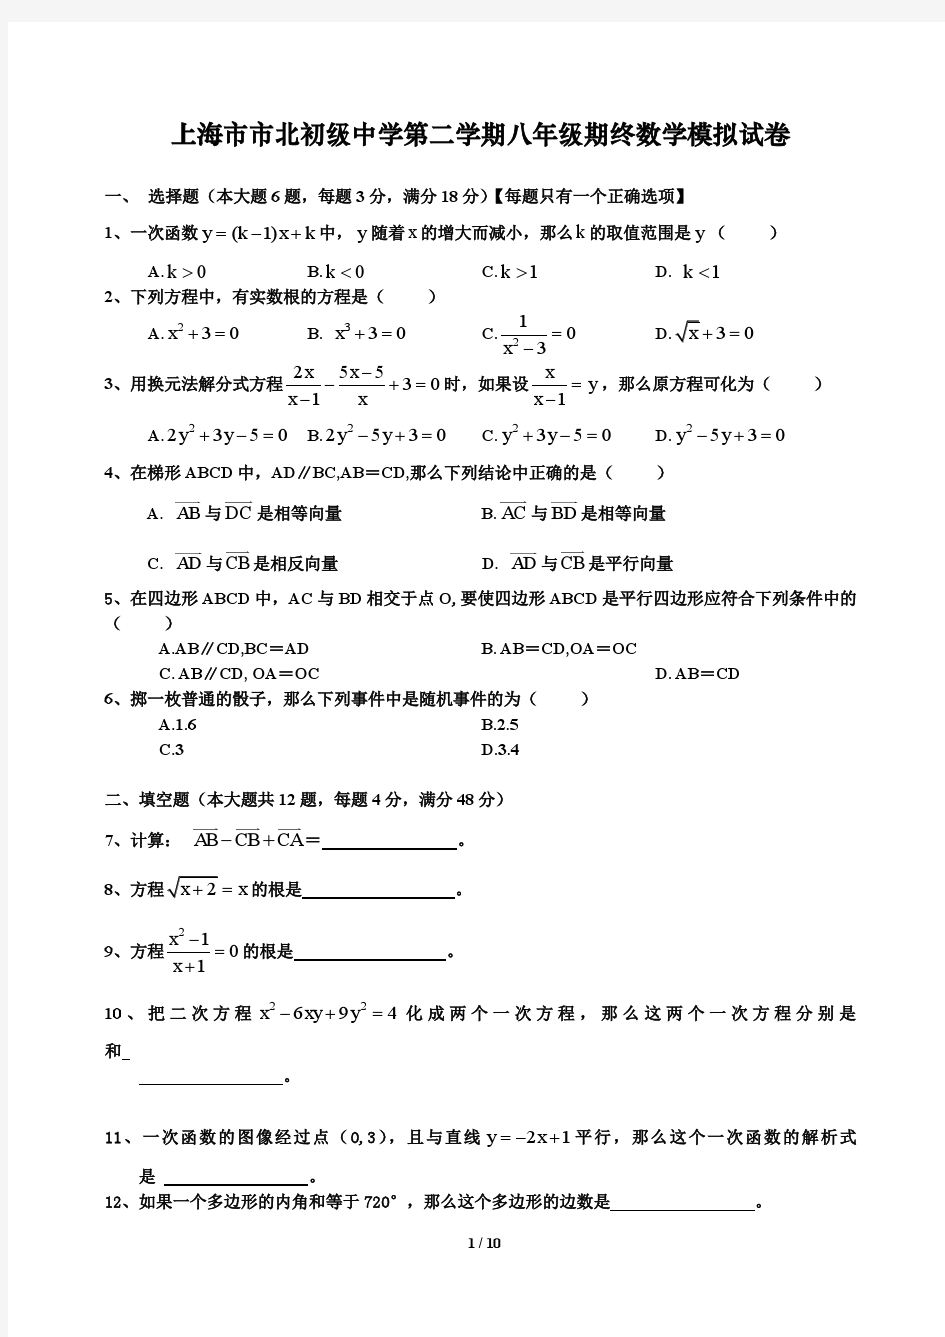 上海市市北初级中学第二学期八年级期终数学模拟试卷